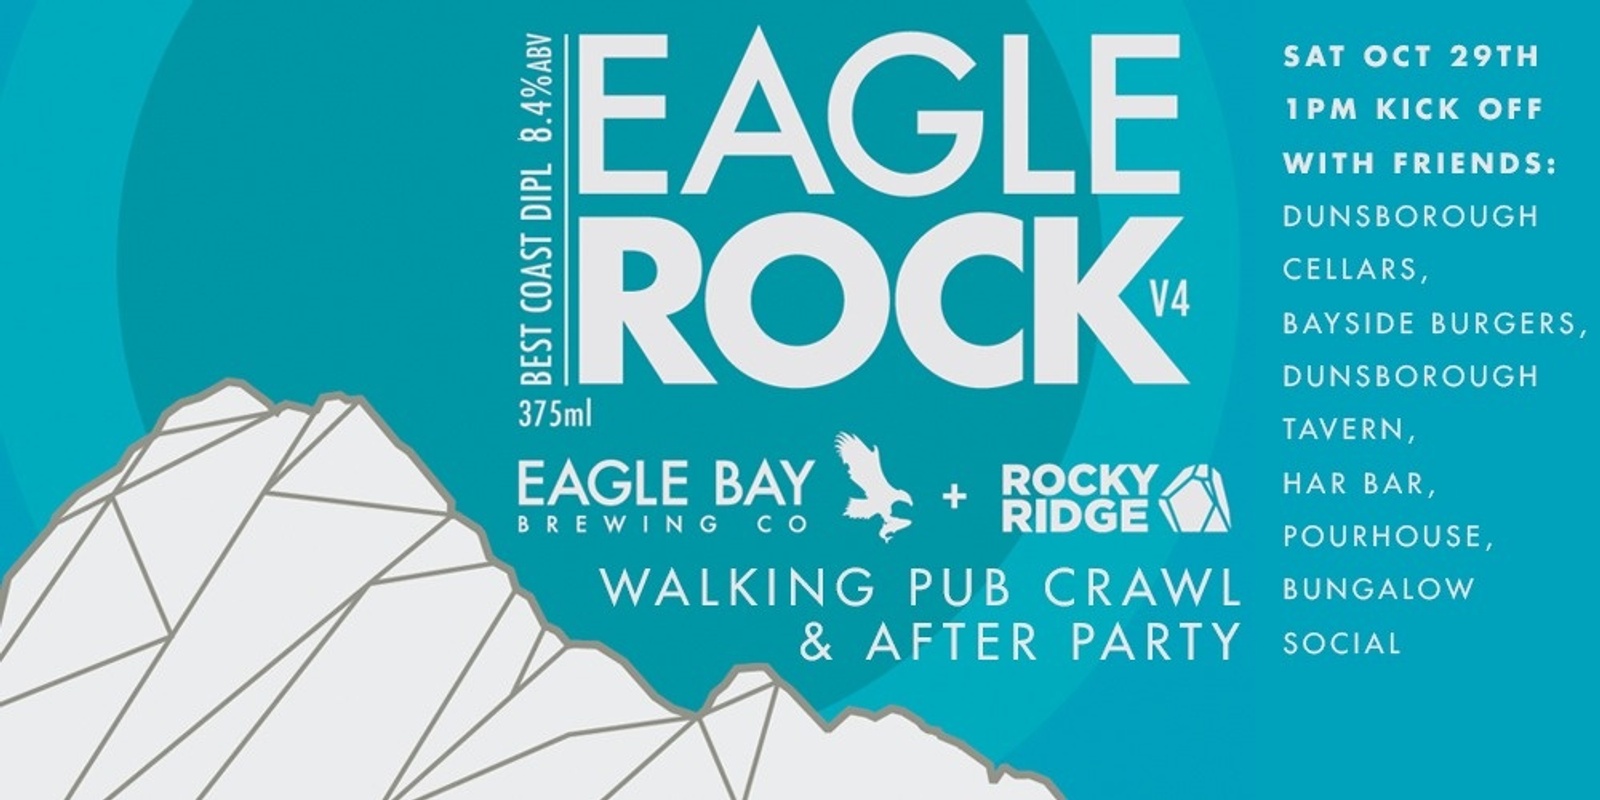 Banner image for Eagle Rock V4 Pub Crawl 